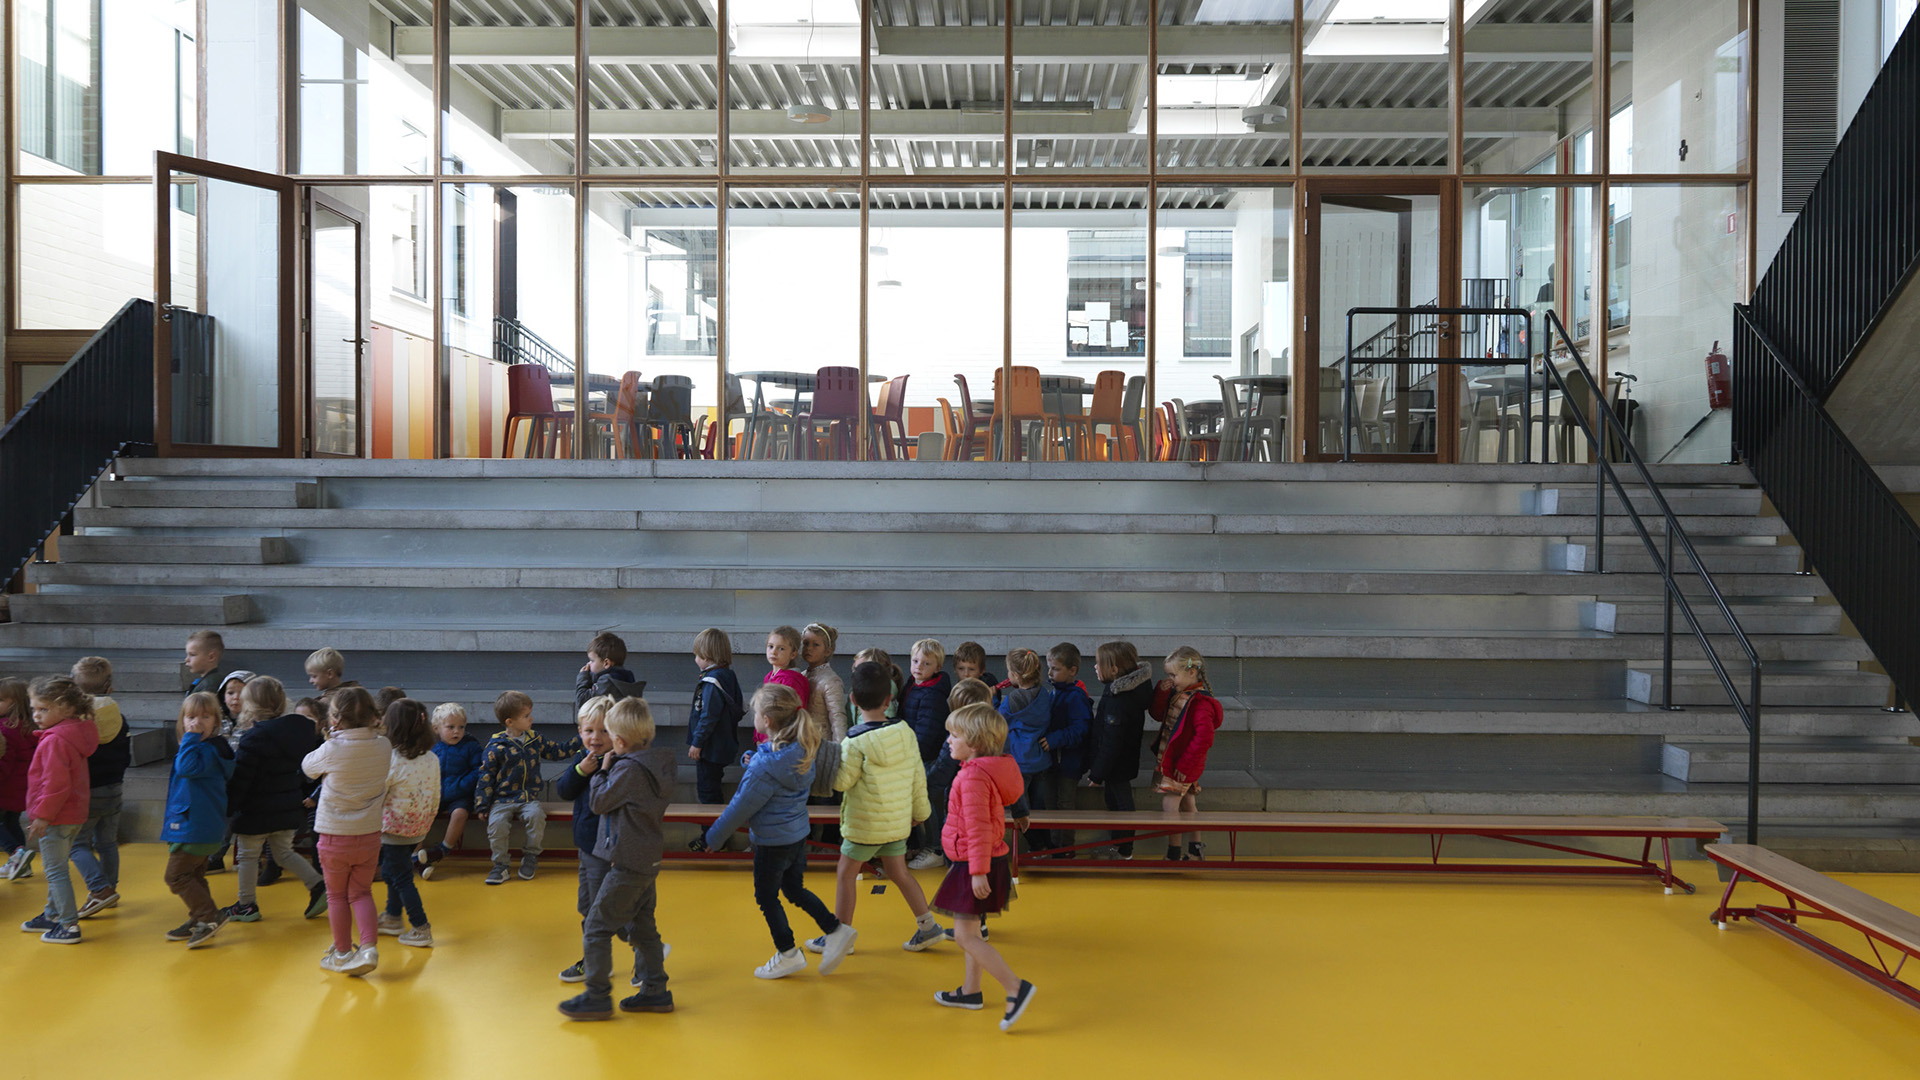 School SVM Wildenburg Wingene AVDK Architecten